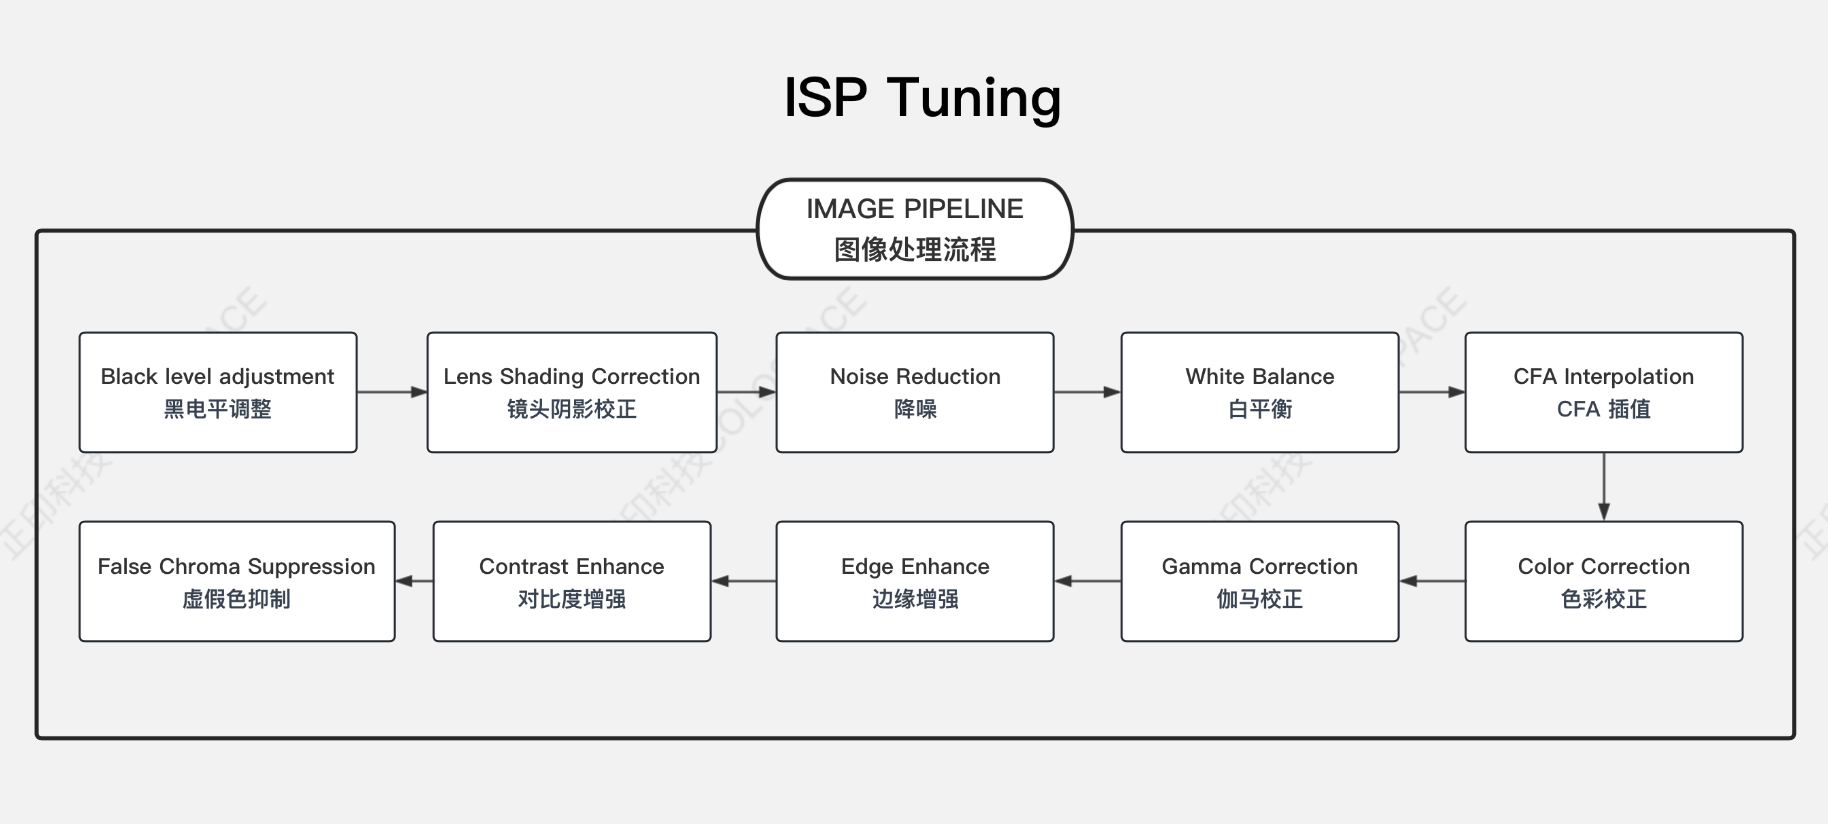 ISP Tuning图像质量调优_ISP 调整原理图